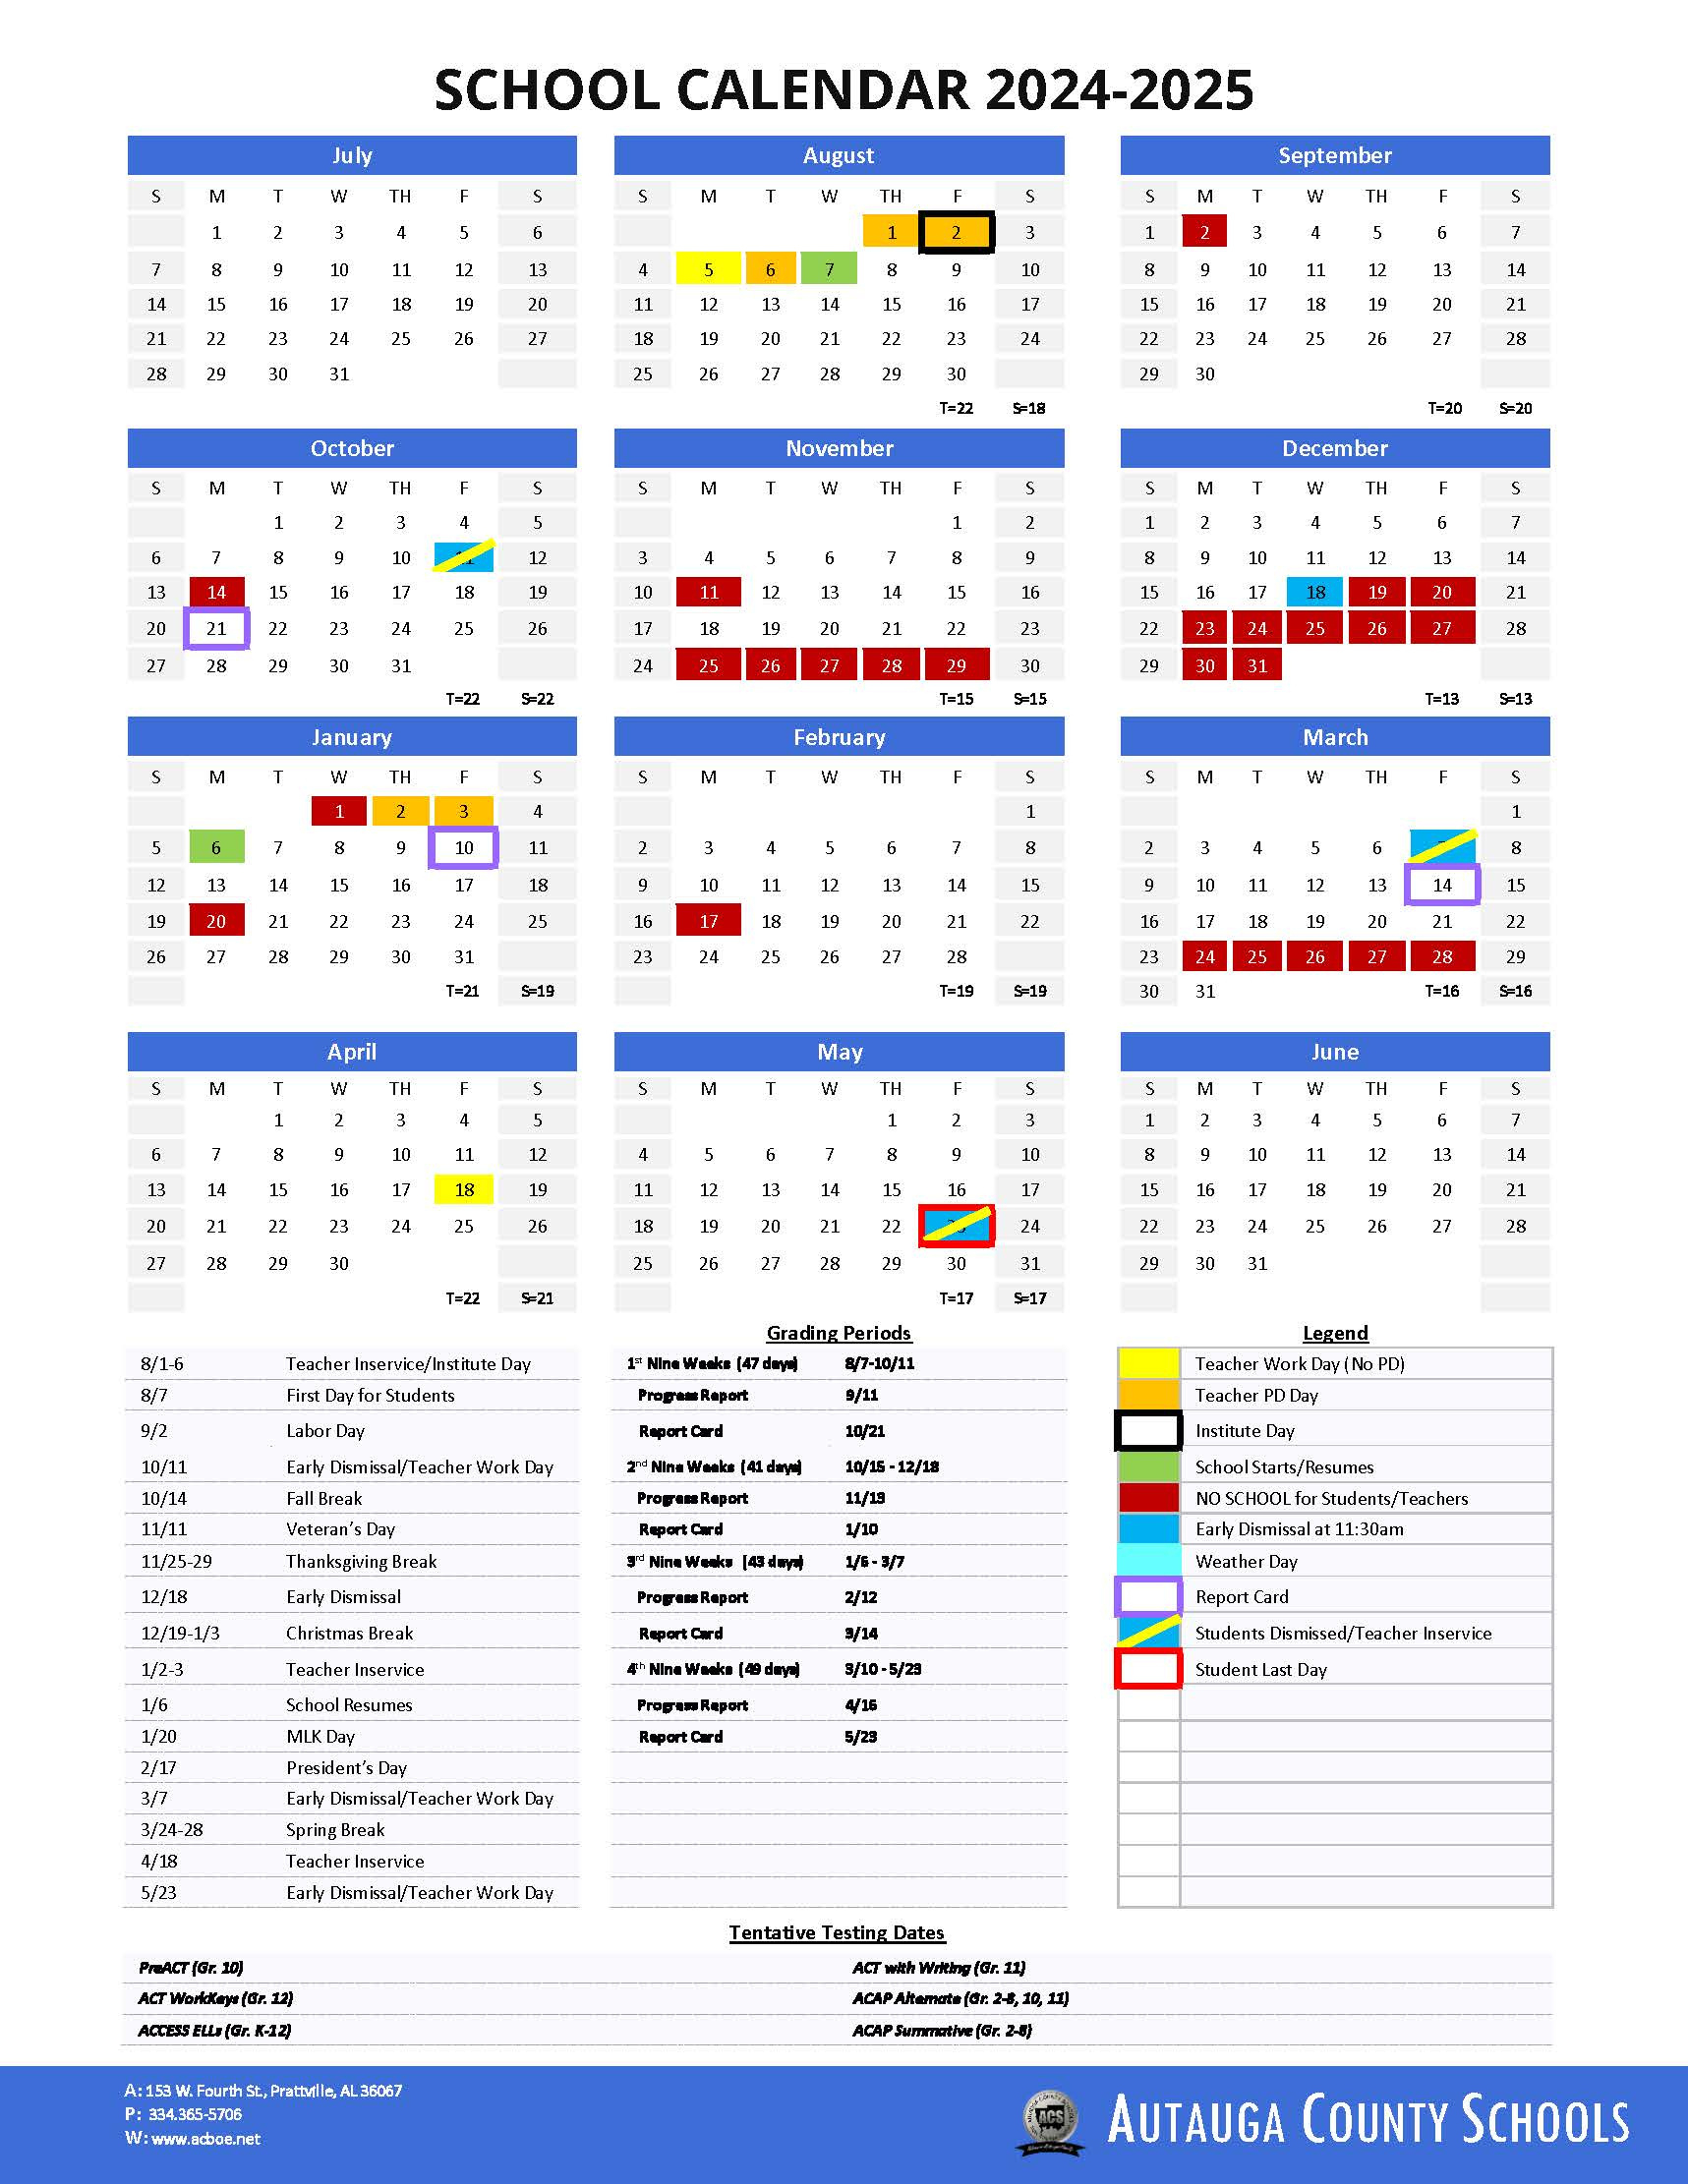 School Calendar - Autauga County Schools in Augusta County School Calendar 2024-24